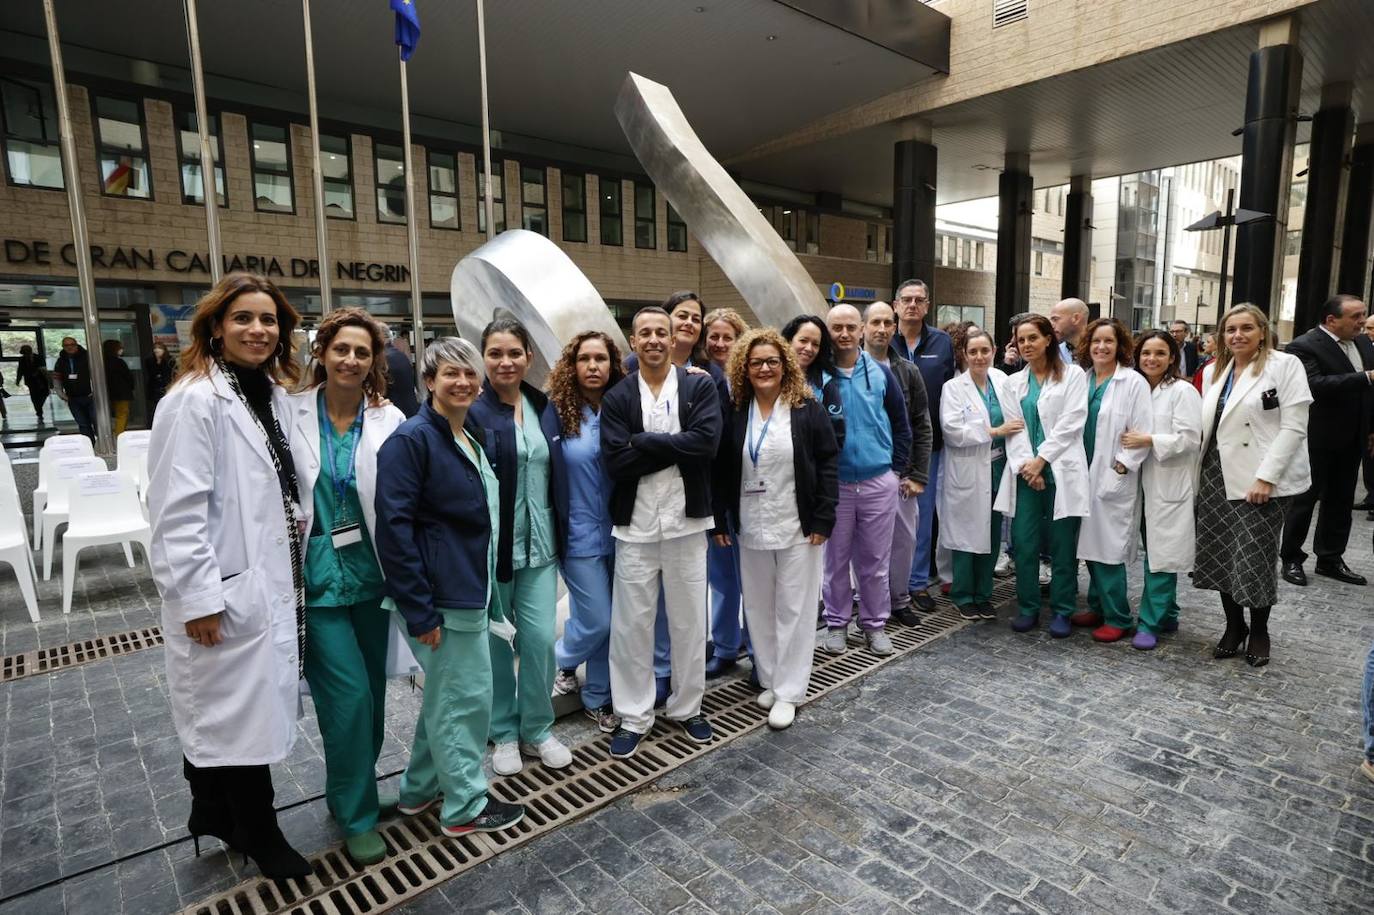 El Hospital Dr. Negrín presenta una escultura para reconocer la labor de los sanitarios